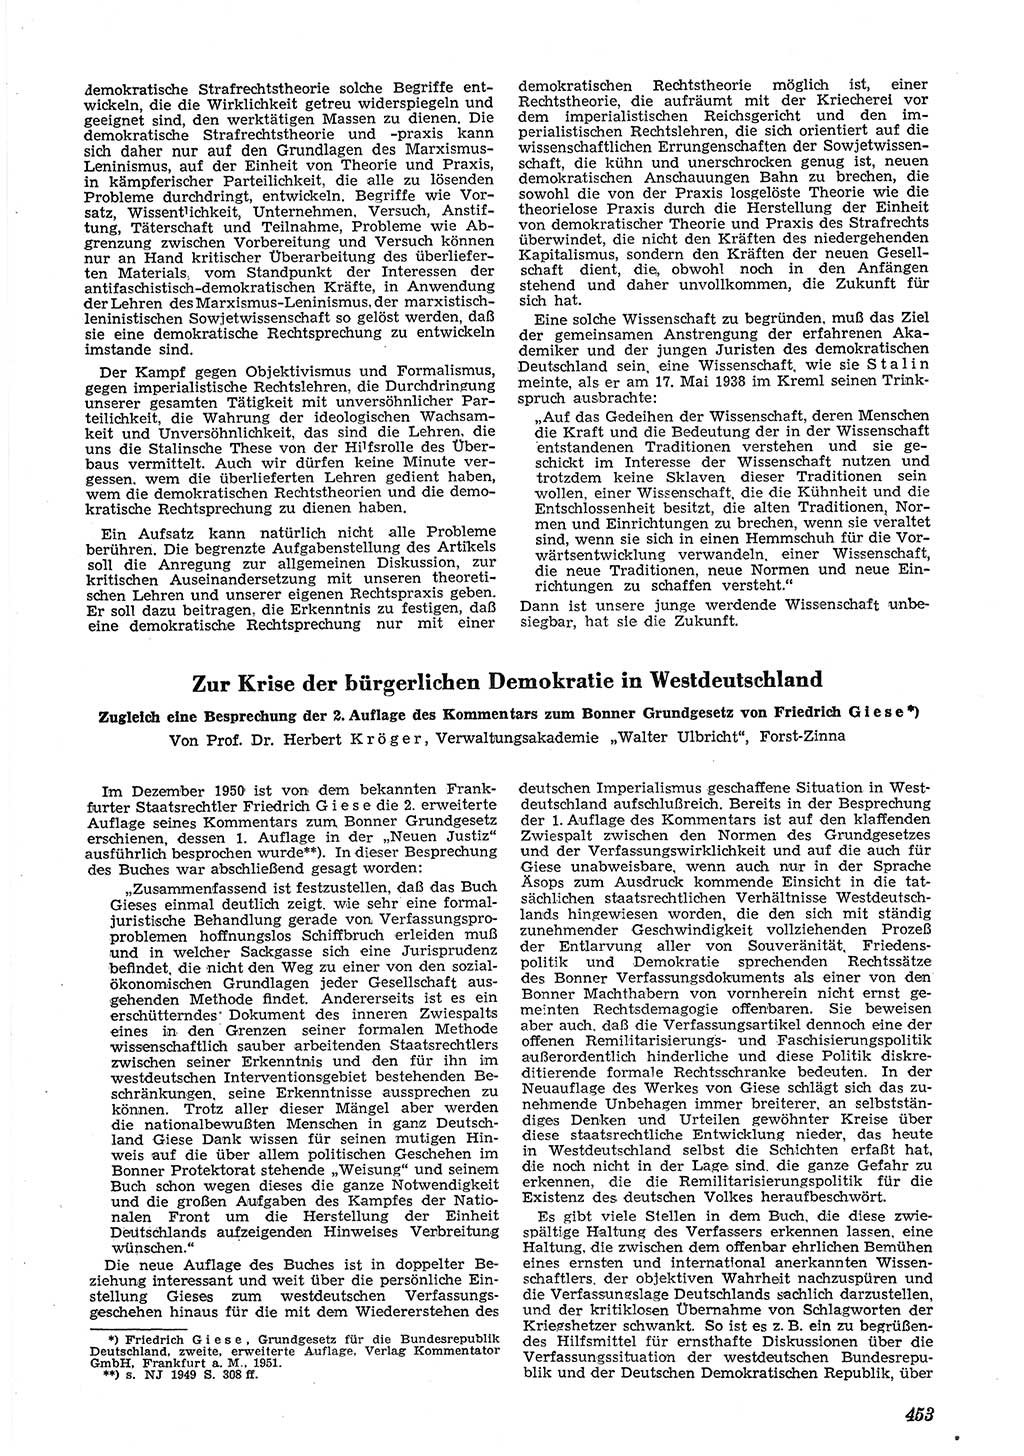 Neue Justiz (NJ), Zeitschrift für Recht und Rechtswissenschaft [Deutsche Demokratische Republik (DDR)], 5. Jahrgang 1951, Seite 453 (NJ DDR 1951, S. 453)